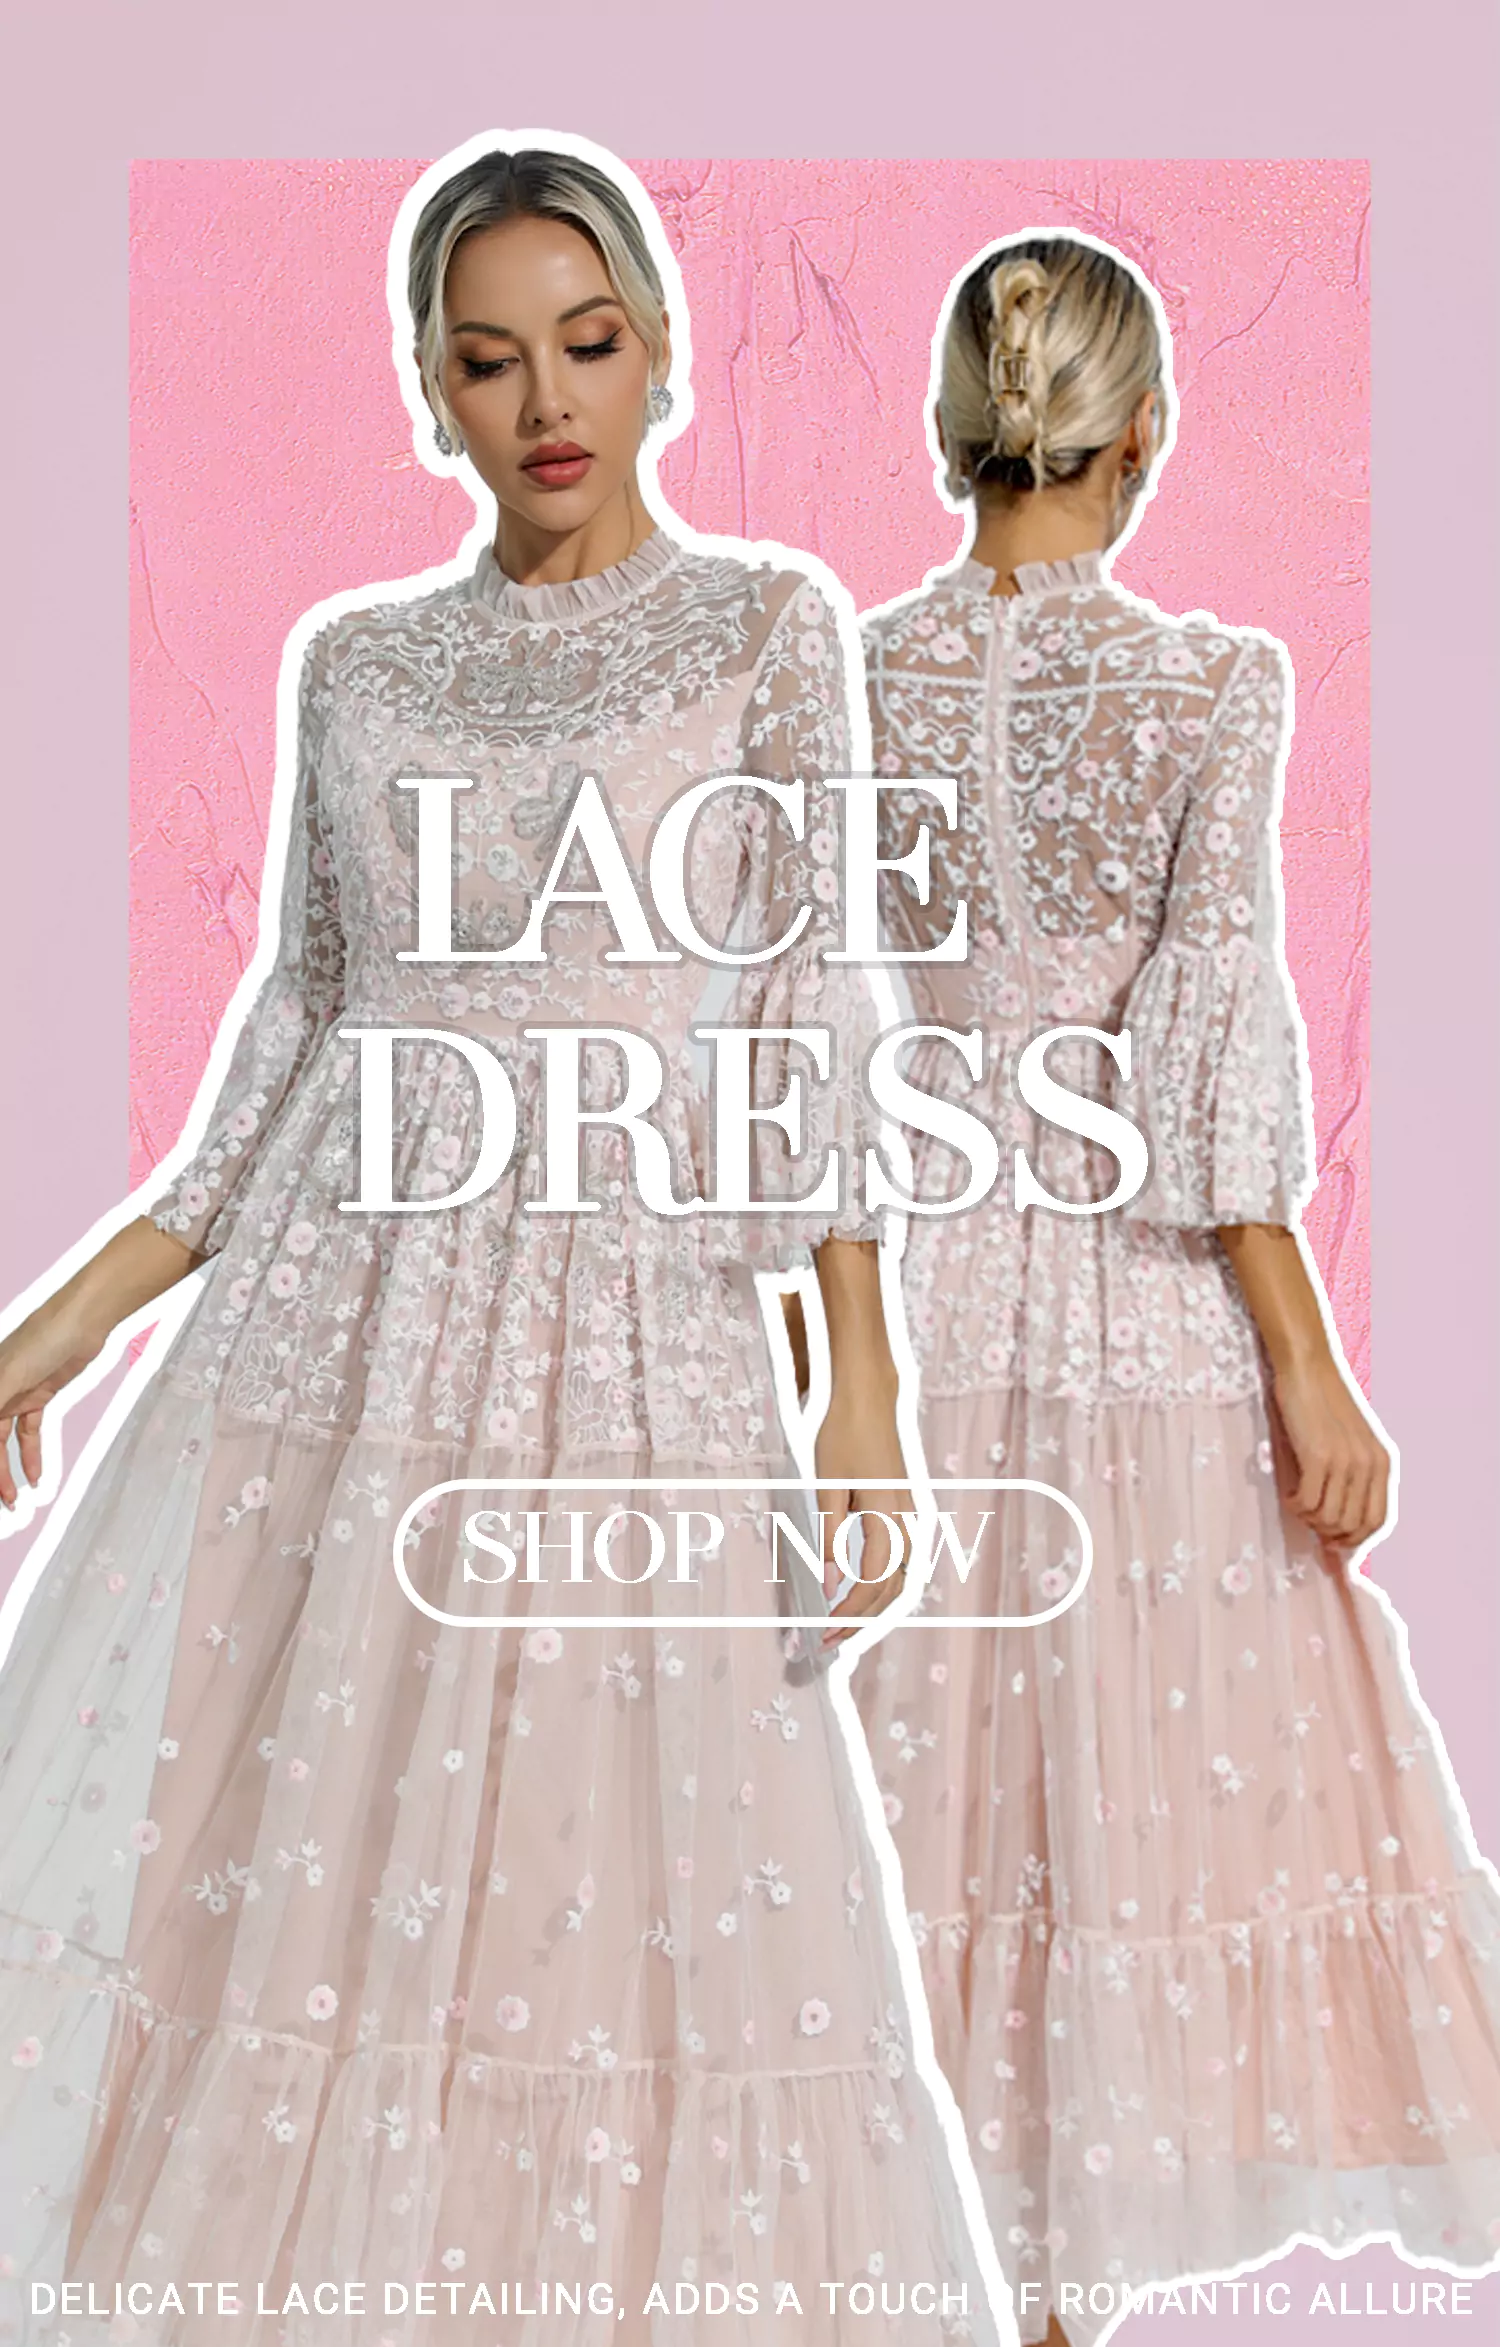 shop deals on women’s dresses